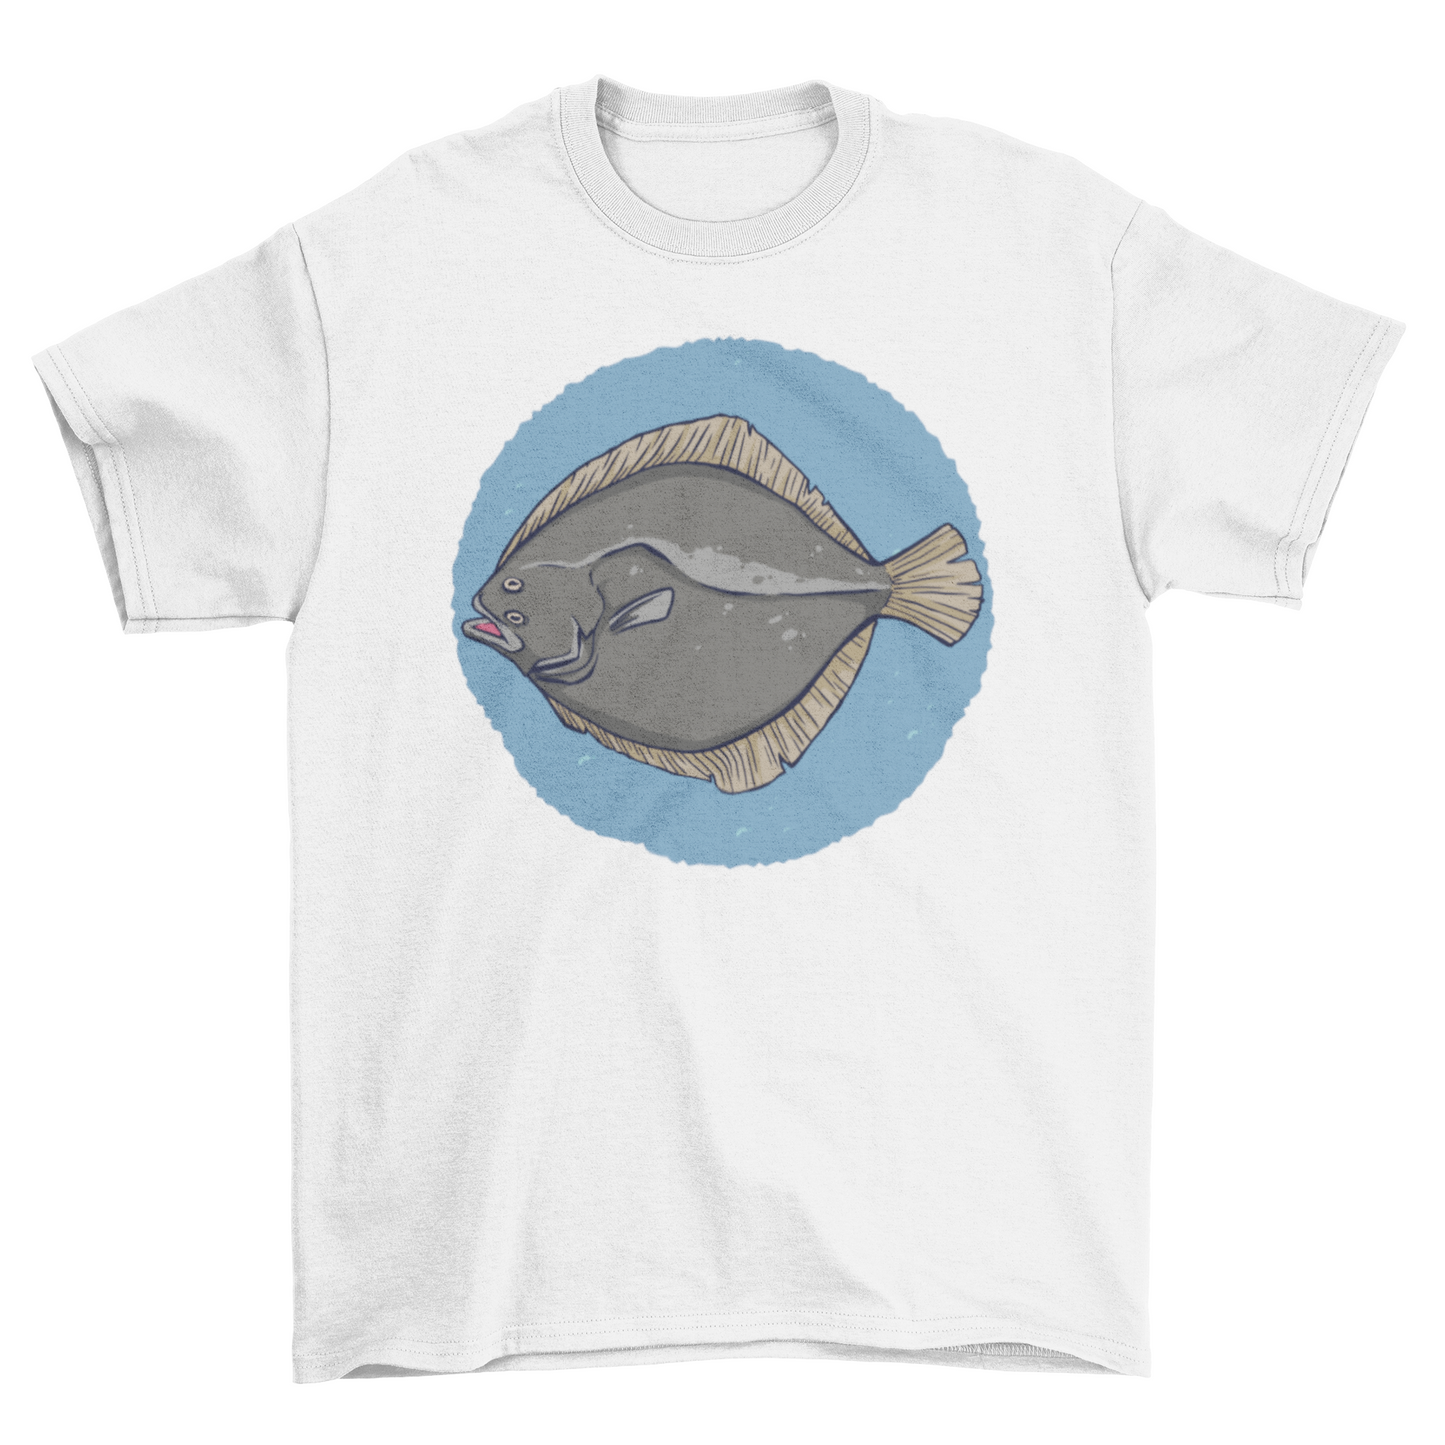 Plaice Fish T-shirt